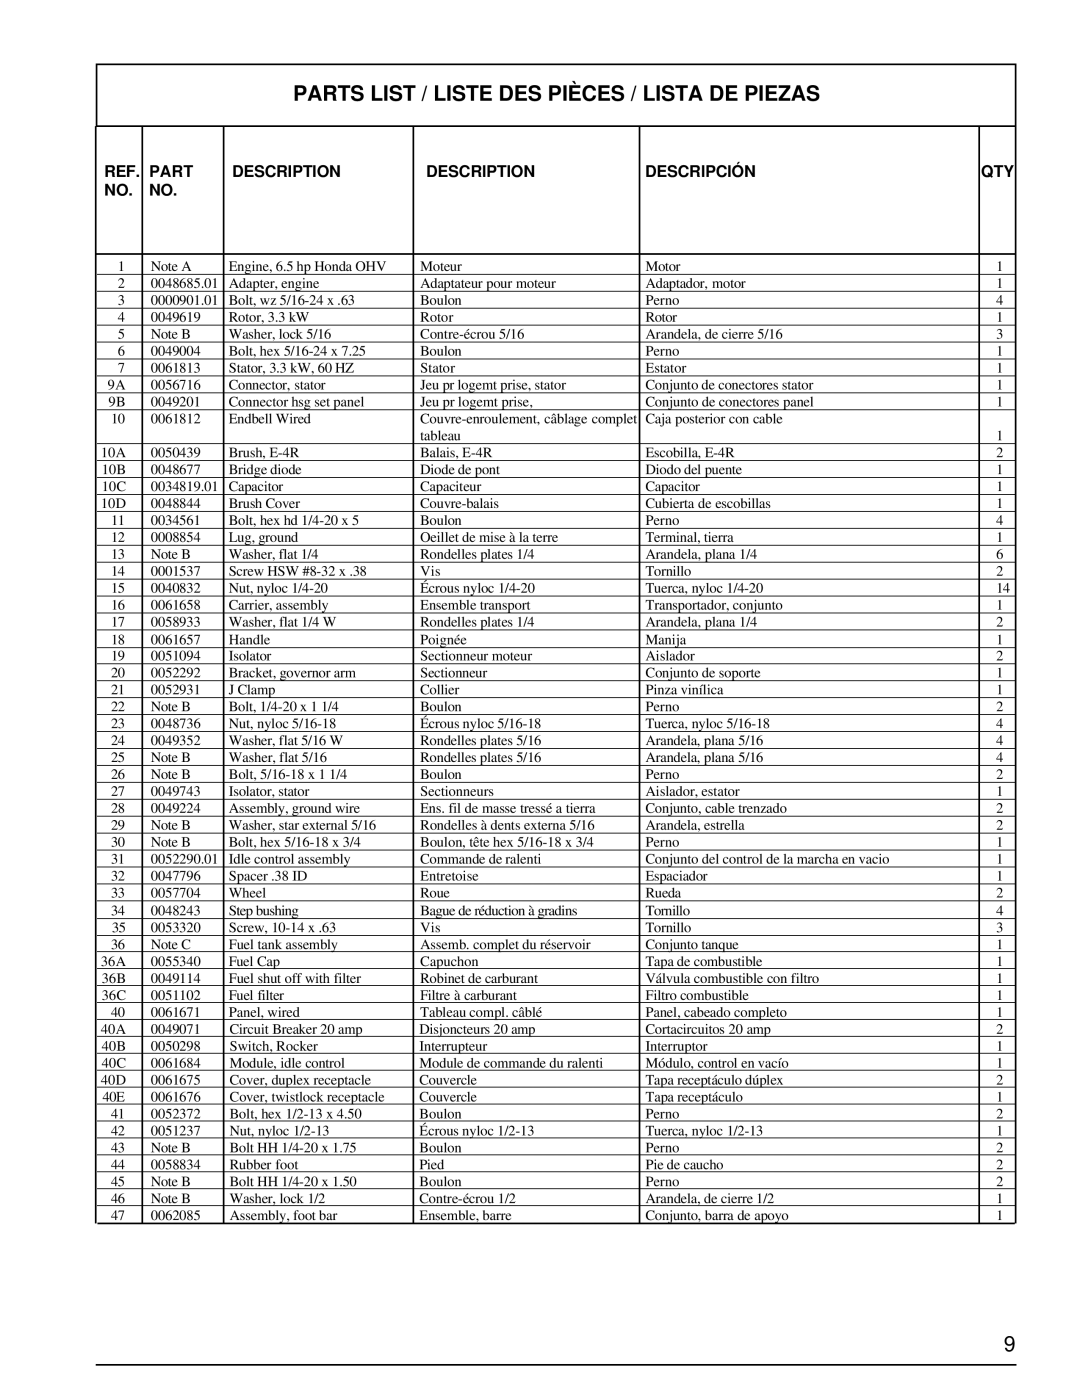 Powermate PM0463302 manual Parts List / Liste Des Pièces / Lista De Piezas, Description, Descripción 